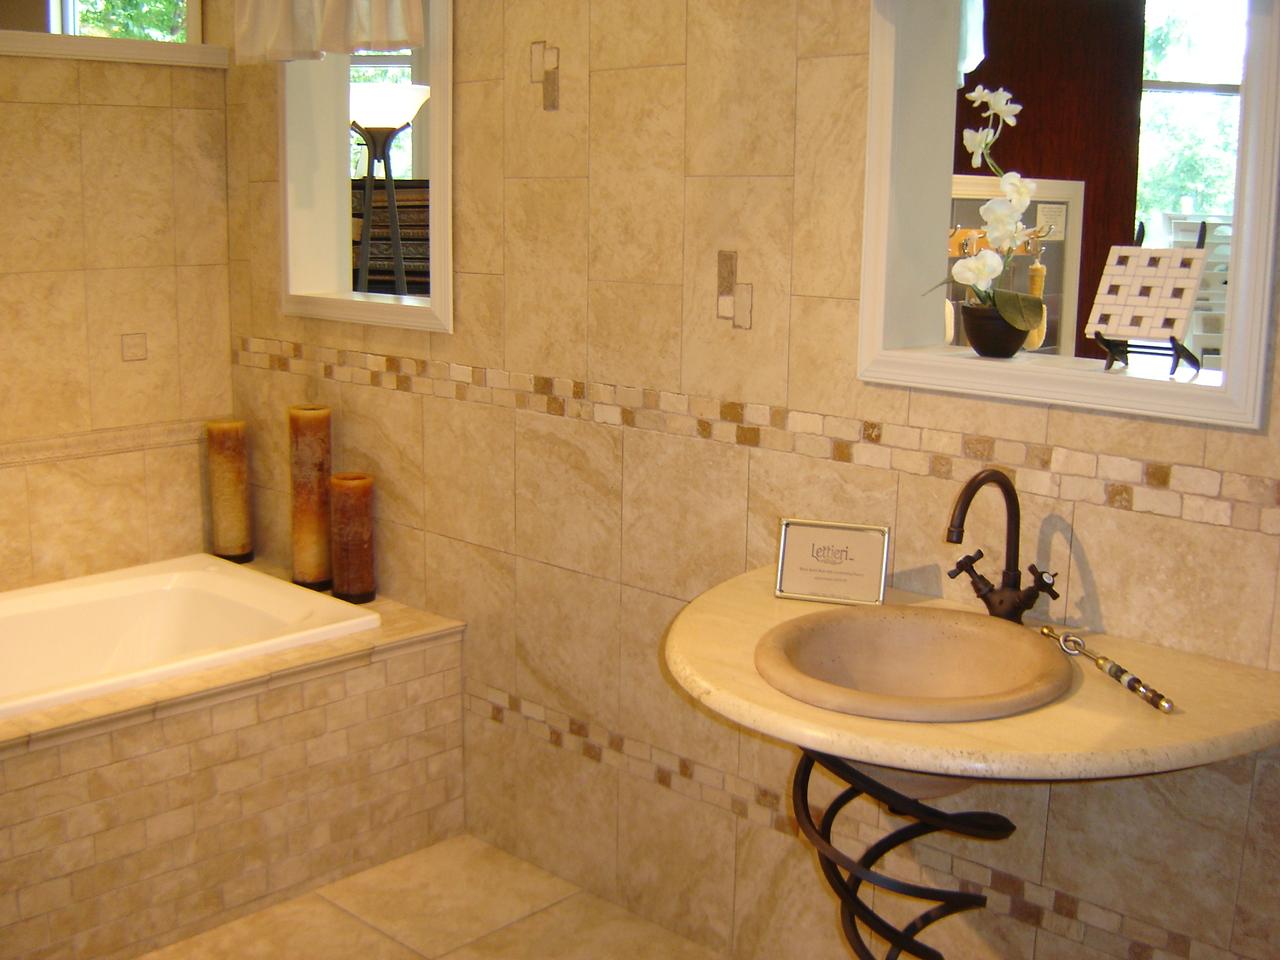 Bathroom designs with ceramic tile